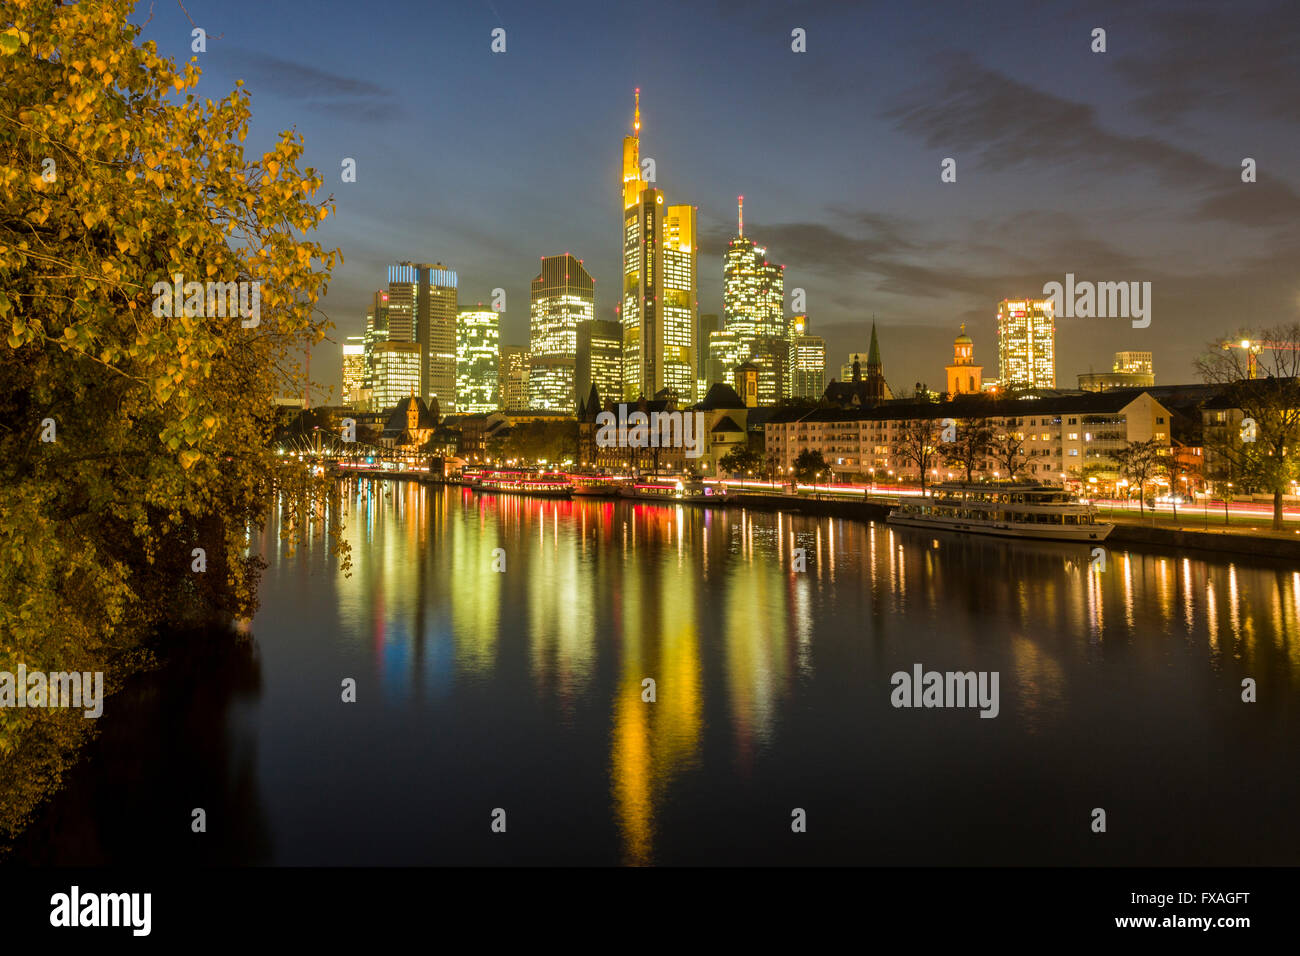 Lo skyline del centro cittadino illuminato il mirroring è nel fiume di notte, Frankfurt am Main, Hesse, Germania Foto Stock